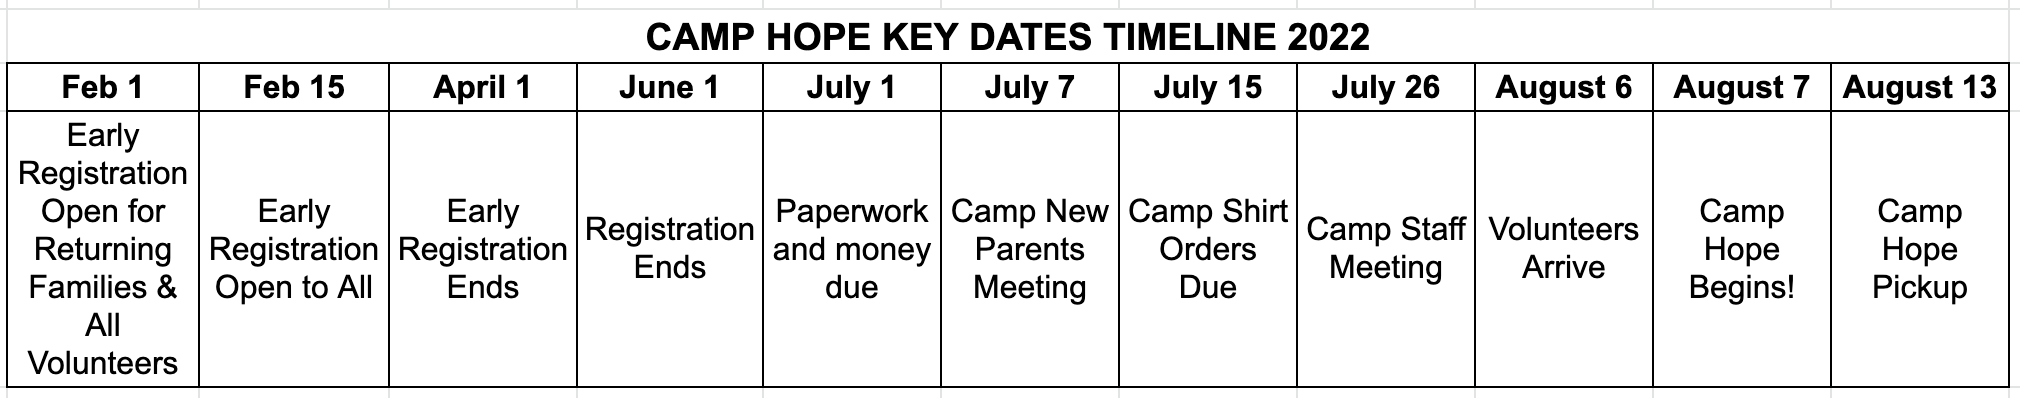 Camp Hope Timeline 2022